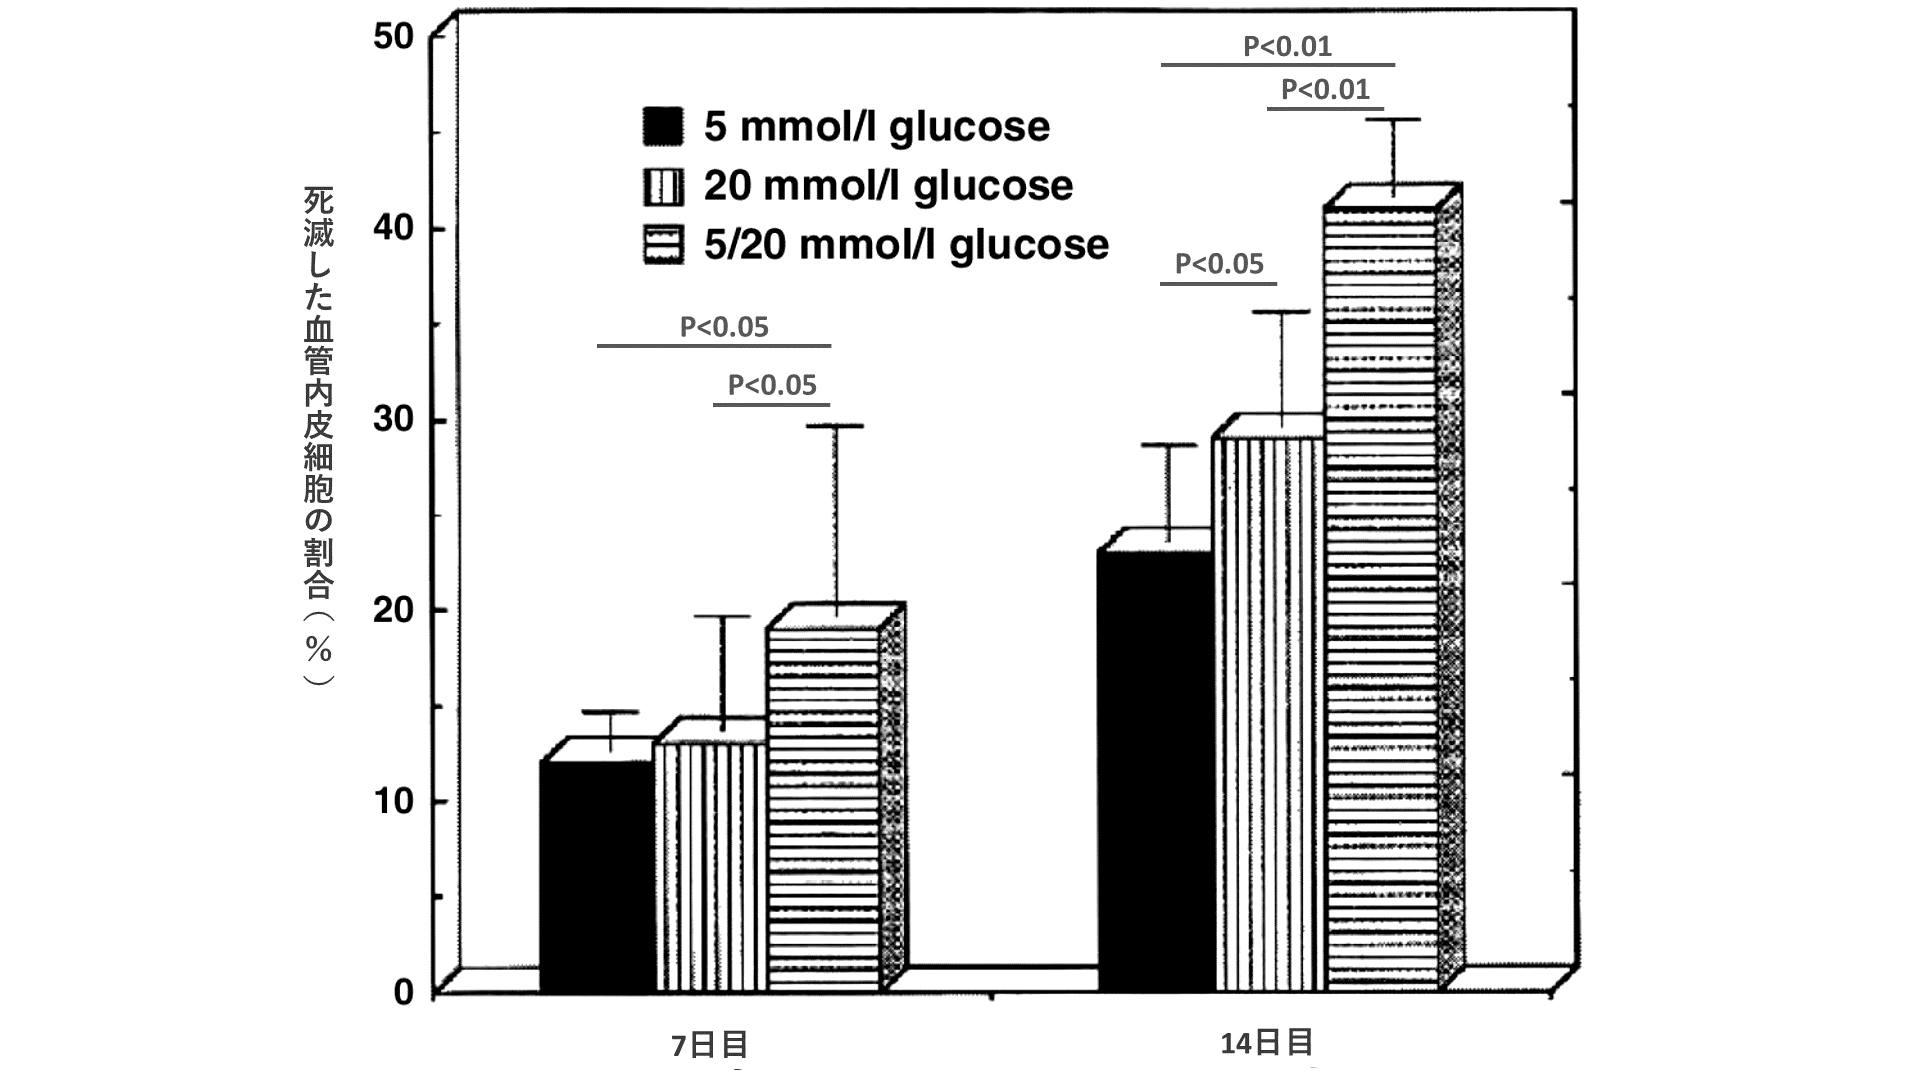 培養7日目において、20mmol/glucoseおよび5/20mmol/glucoseの死滅した血管内皮細胞の割合は、5mmol/glucoseに比較して増加が認められた（p<0.05）。培養14日目において、20mmol/glucoseの死滅した血管内皮細胞の割合は、5mmol/glucoseに比較して増加が認められた（p<0.05）。また、培養14日目において、5/20mmol/glucoseの死滅した血管内皮細胞の割合は、5mmol/glucoseに比較して増加が認められた（p<0.01）。さらに、培養14日目において、5/20mmol/glucoseの死滅した血管内皮細胞の割合は、20mmol/glucoseに比較して有意な増加が認められた（p<0.01）。